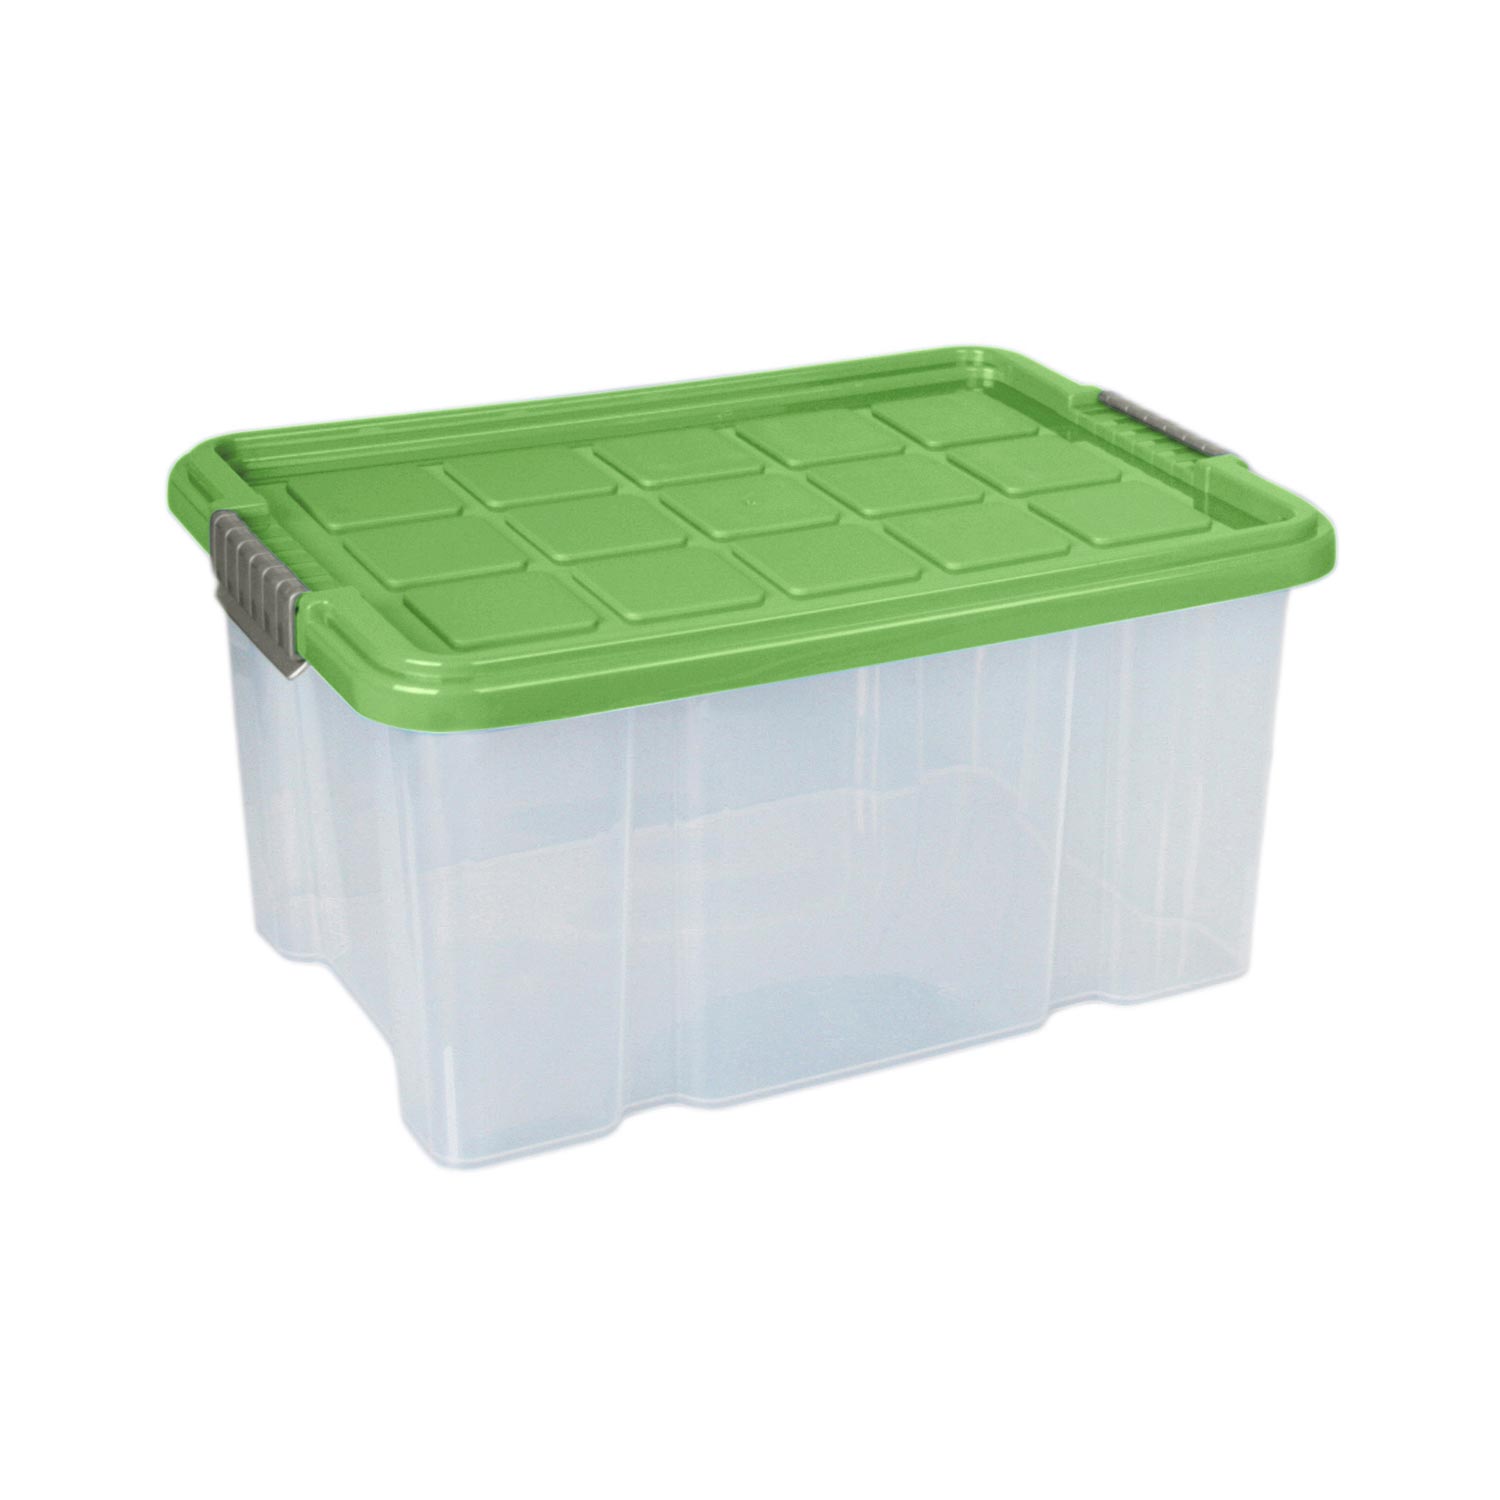 Aufbewahrungsbox "Eurobox" 15 L in grün, Kunststoffbox